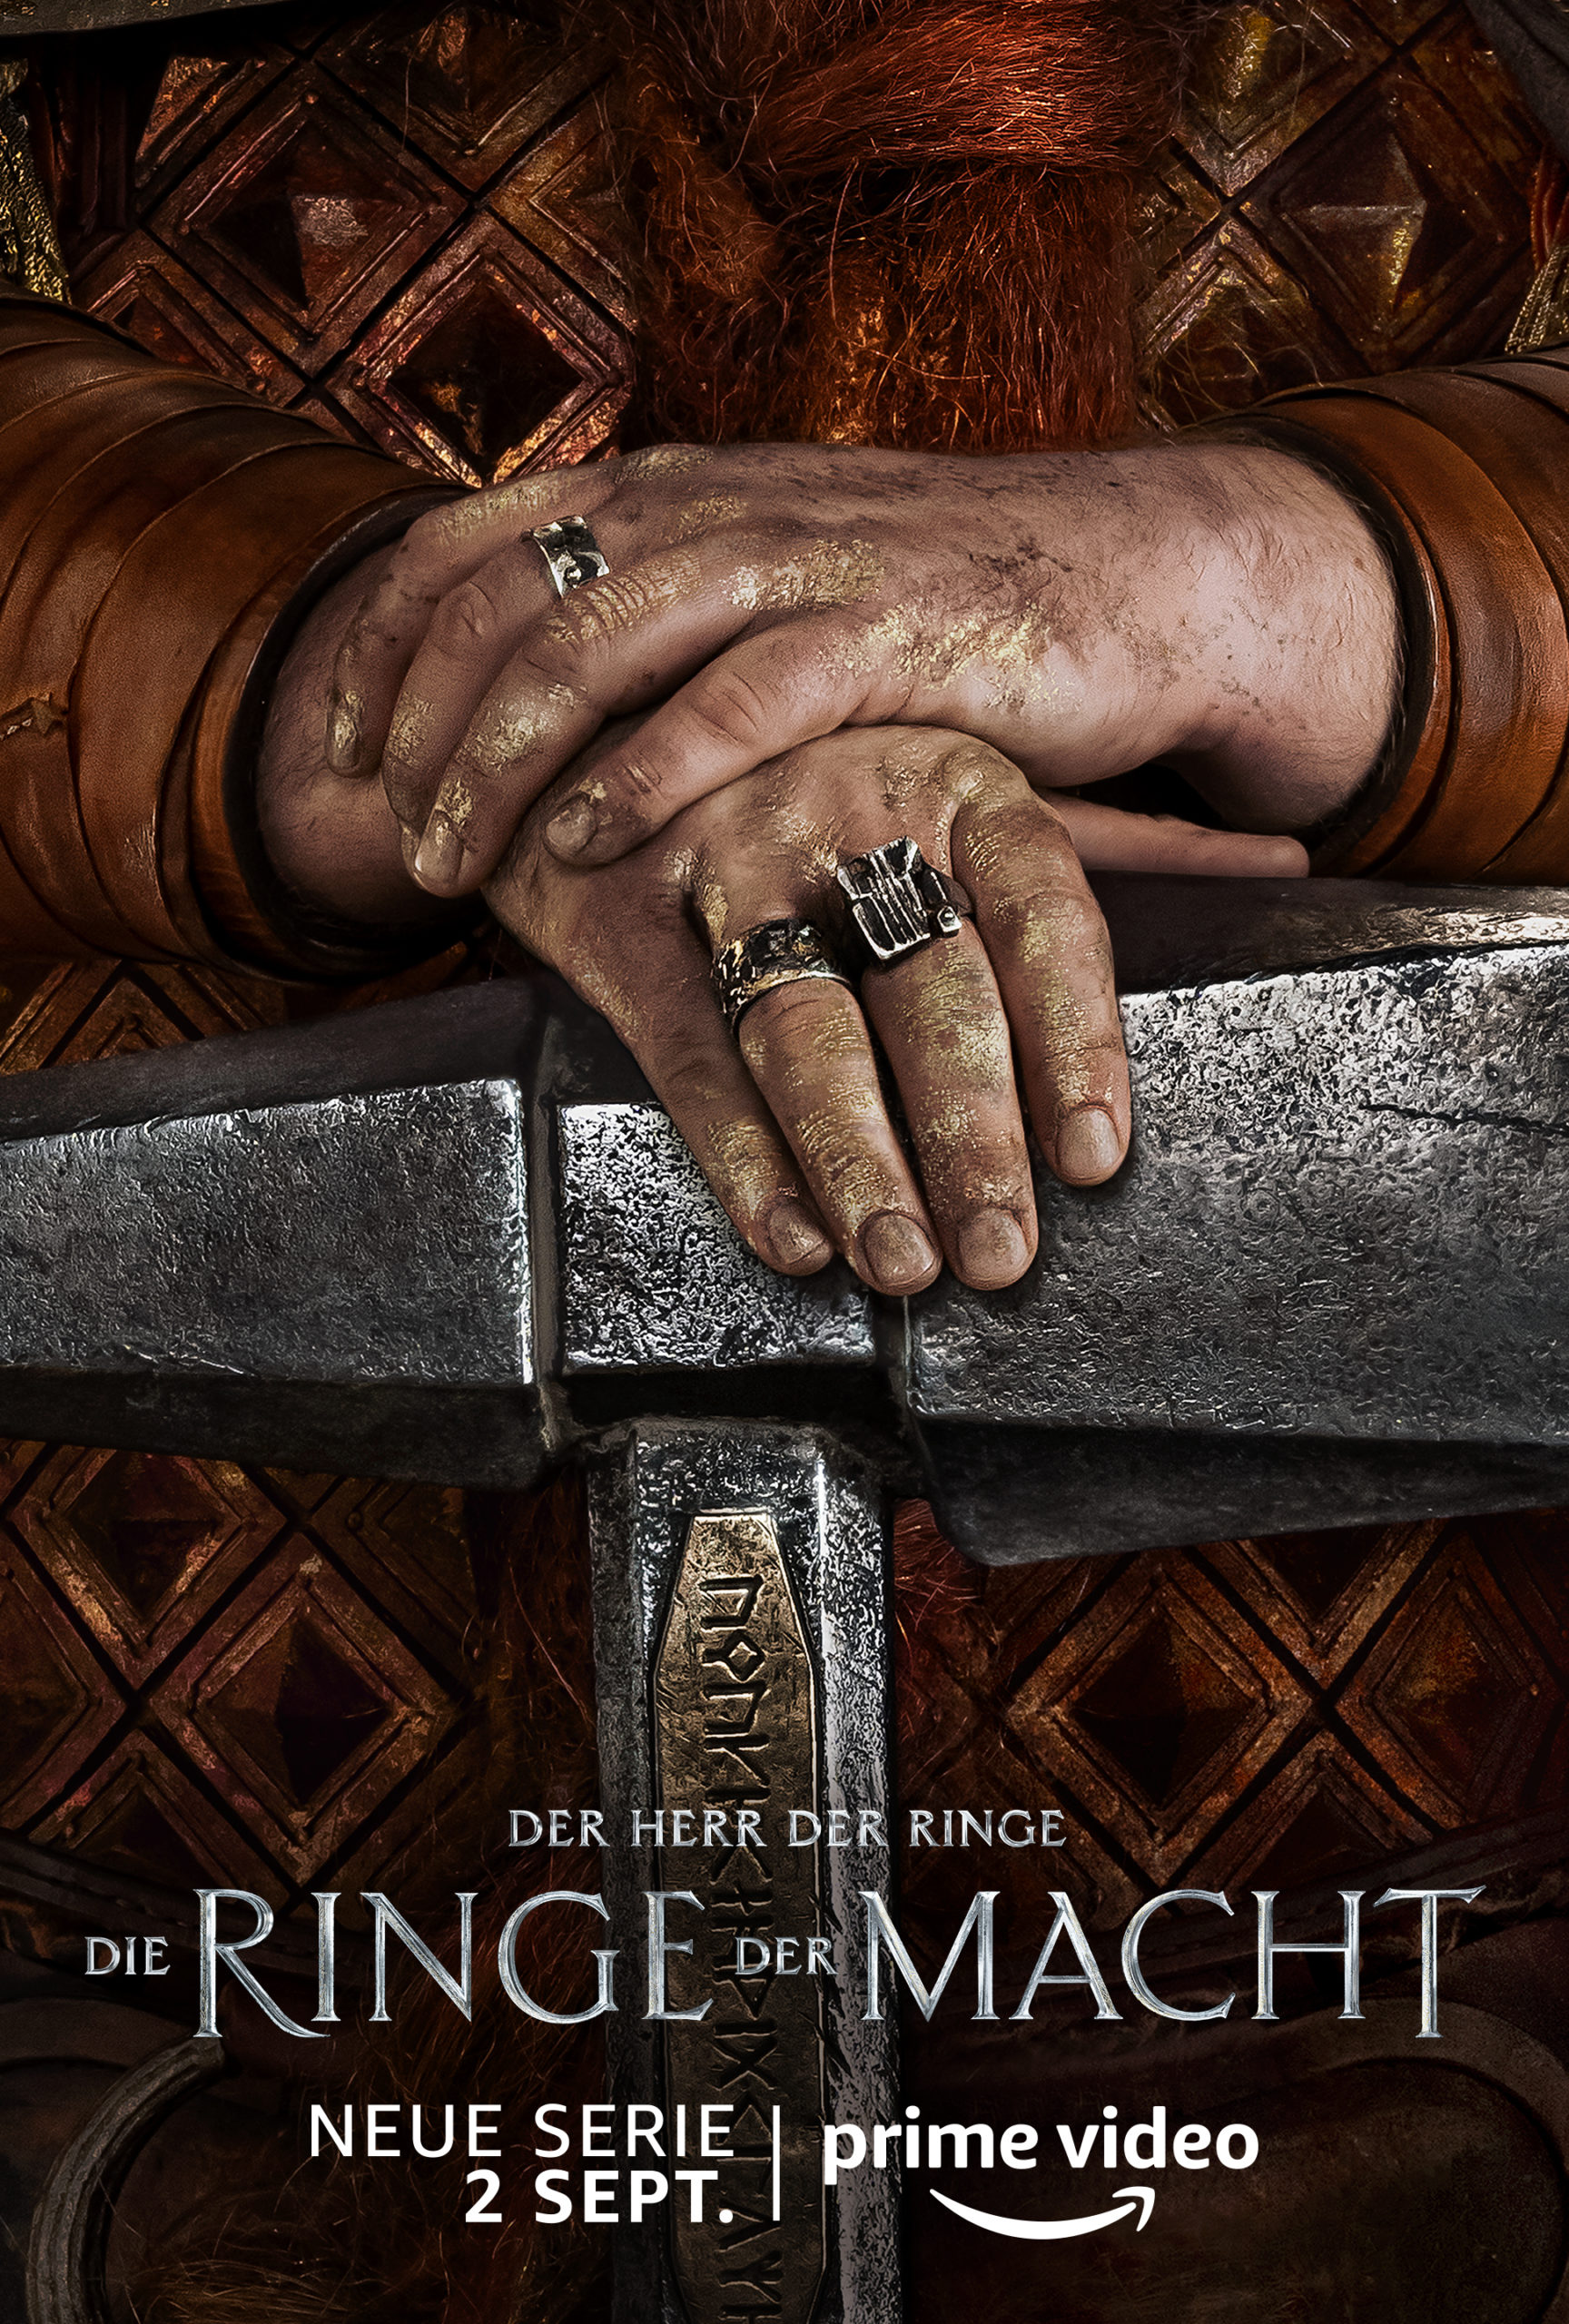 Die Ringe der Macht: Alles zu Release, Story, Cast & Trailer